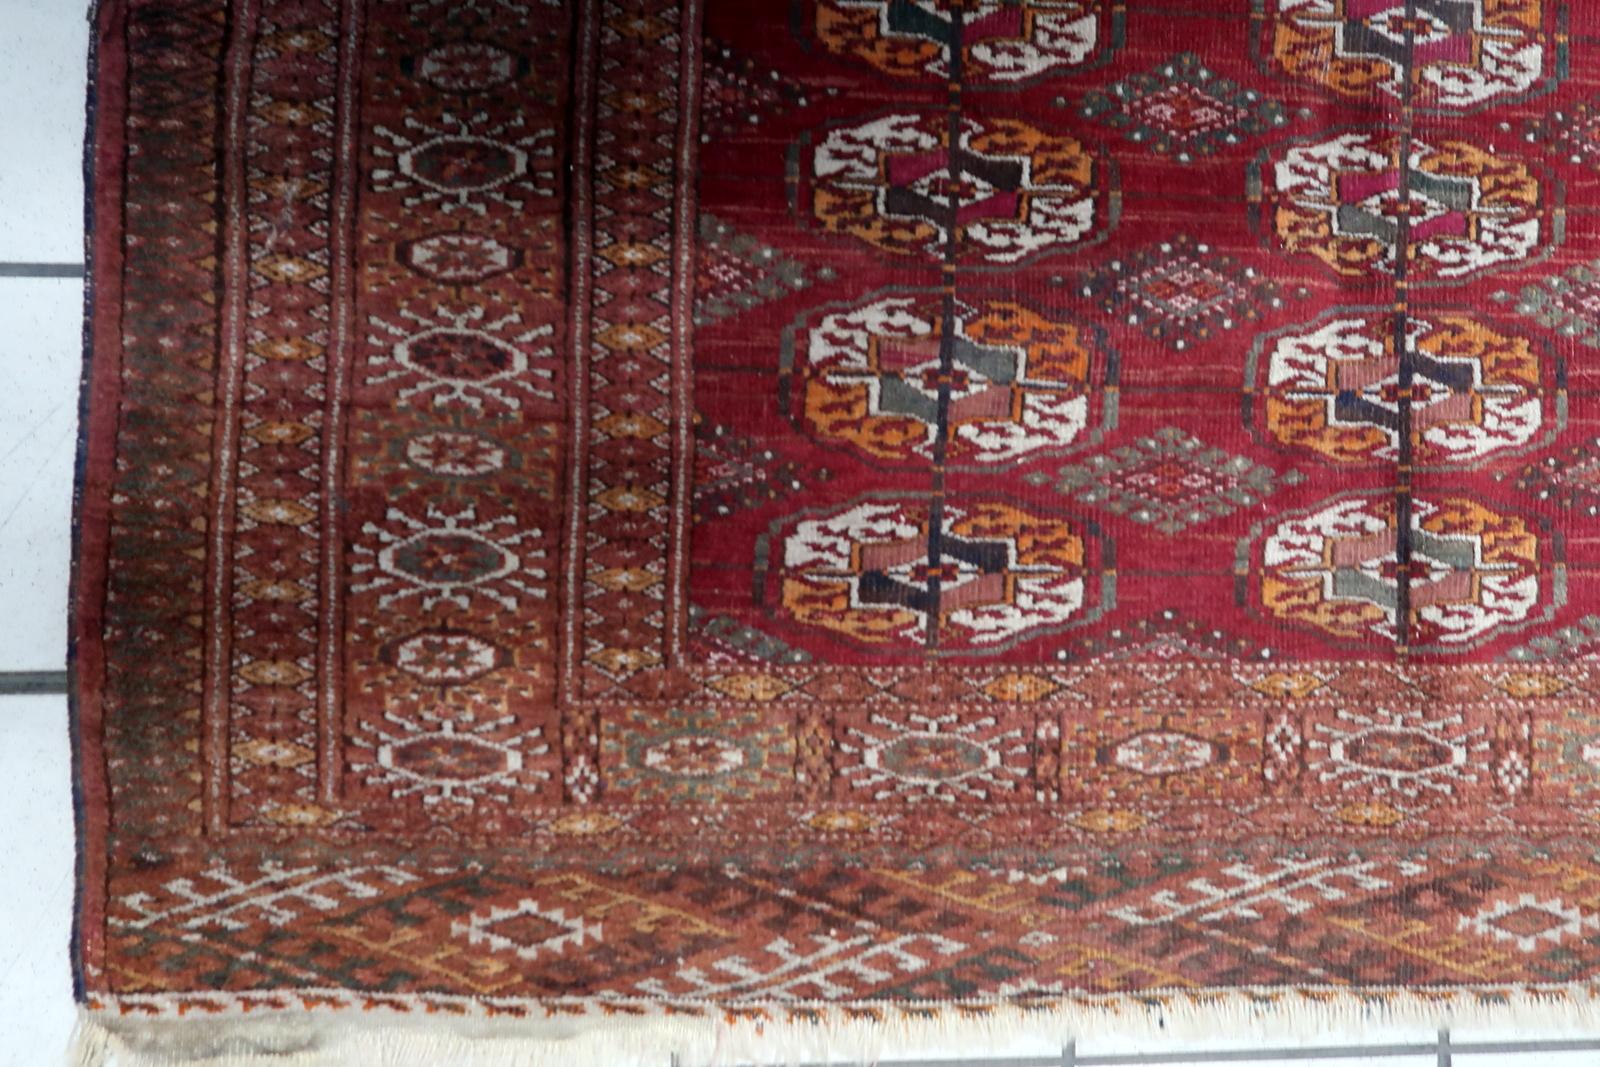 Nous vous présentons notre exquis tapis ouzbek Bukhara vintage, fait à la main, datant des années 1940. Ce superbe tapis illustre la beauté intemporelle et l'art de la tradition de tissage de l'Ouzbékistan.

Mesurant 4,1 pieds sur 6 pieds (128cm x